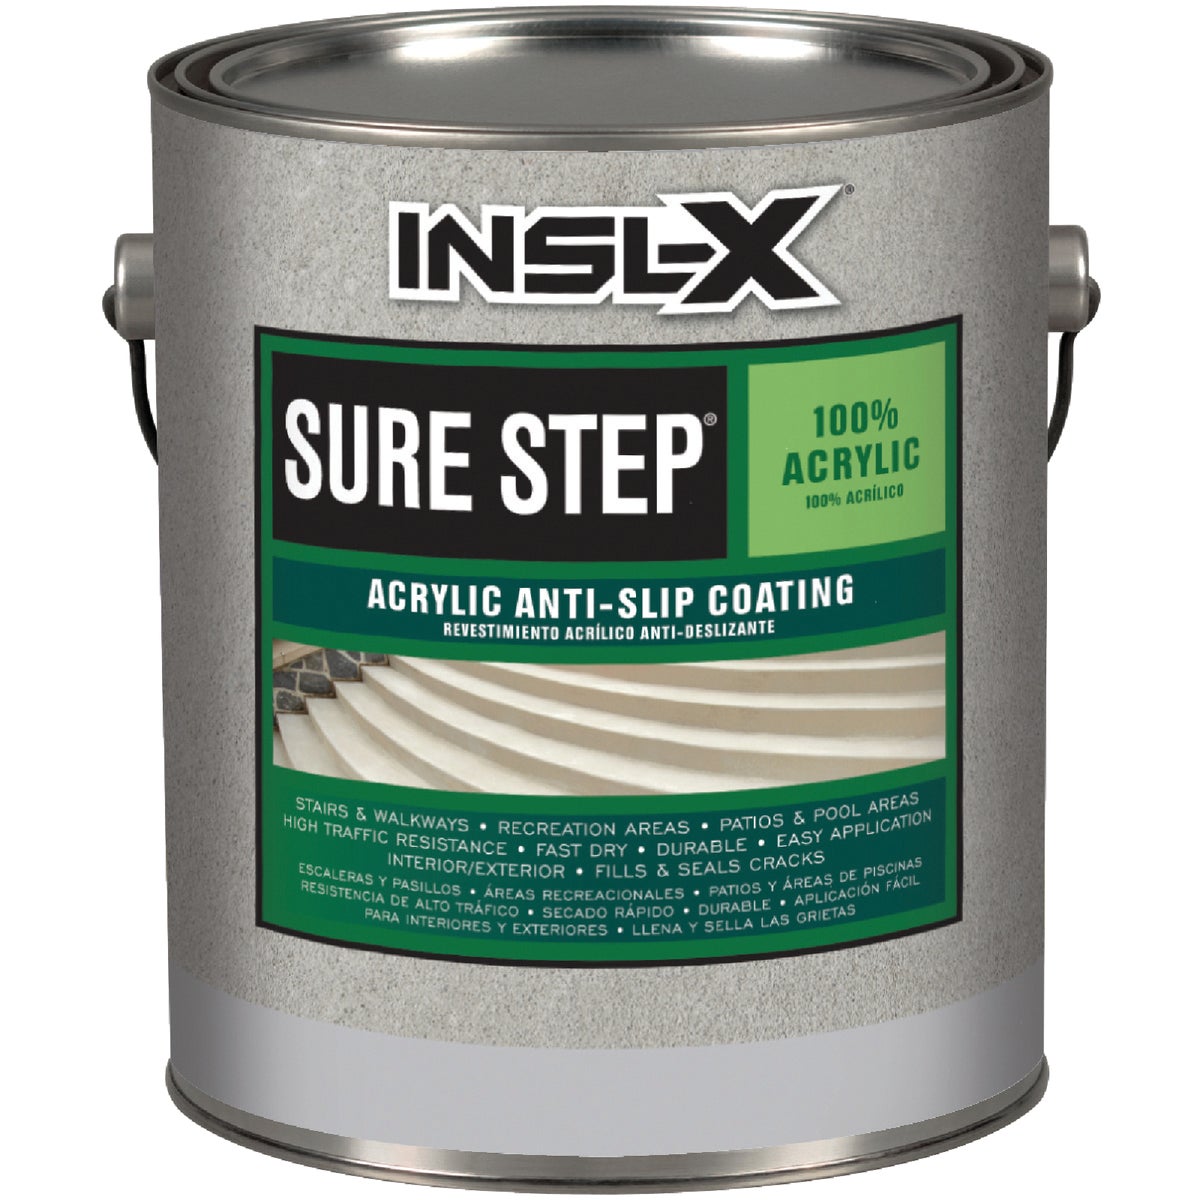 INSL-X Sure Step White Resistant Concrete Paint, 1 Gal.